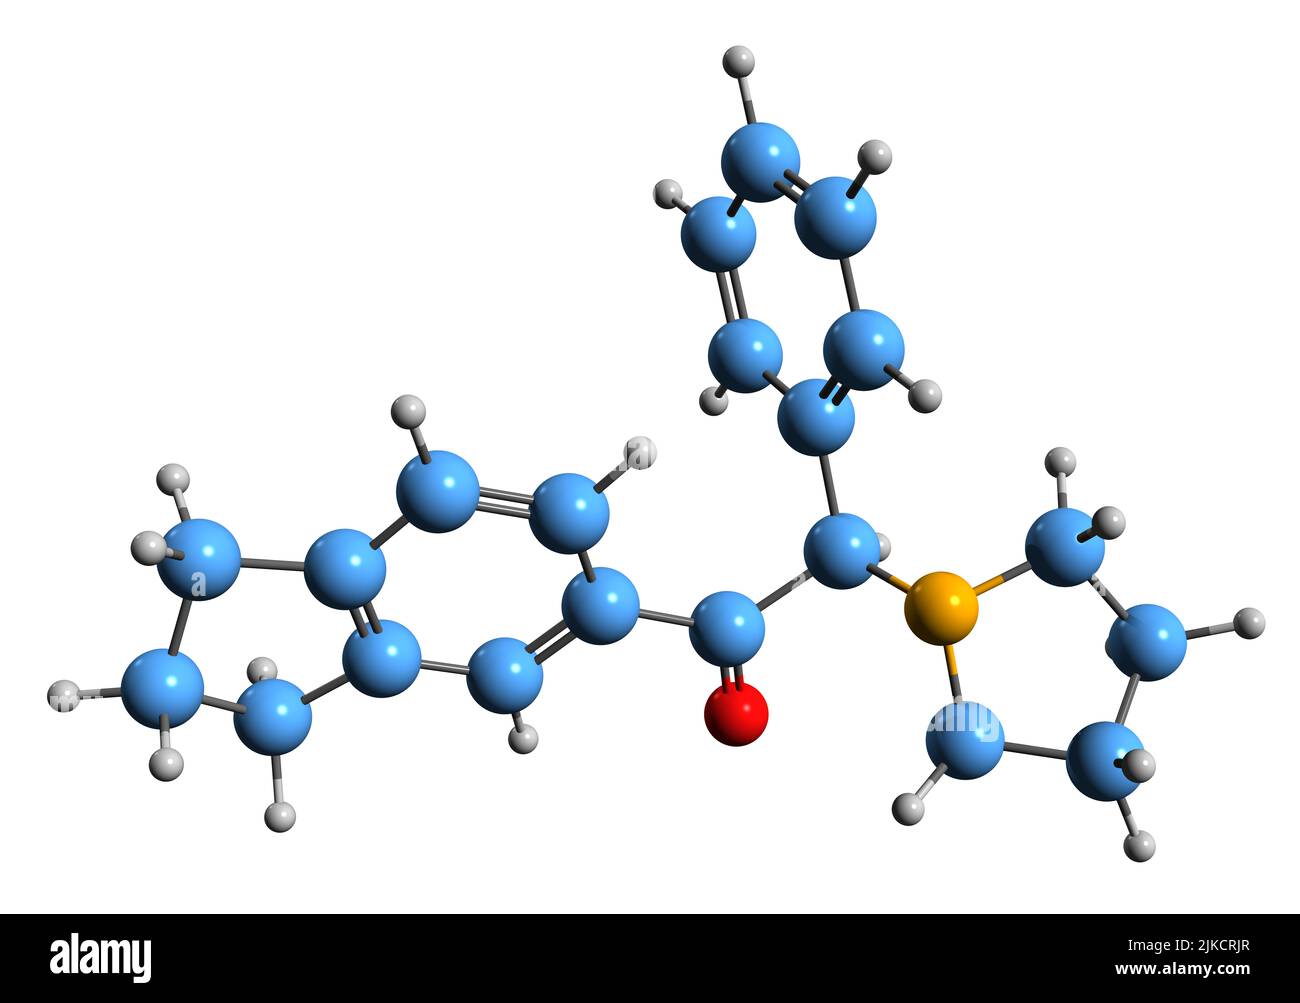 3D Bild der Indapyrophenidon-Skelettformel - molekularchemische Struktur des Designerarzneimittels auf weißem Hintergrund isoliert Stockfoto